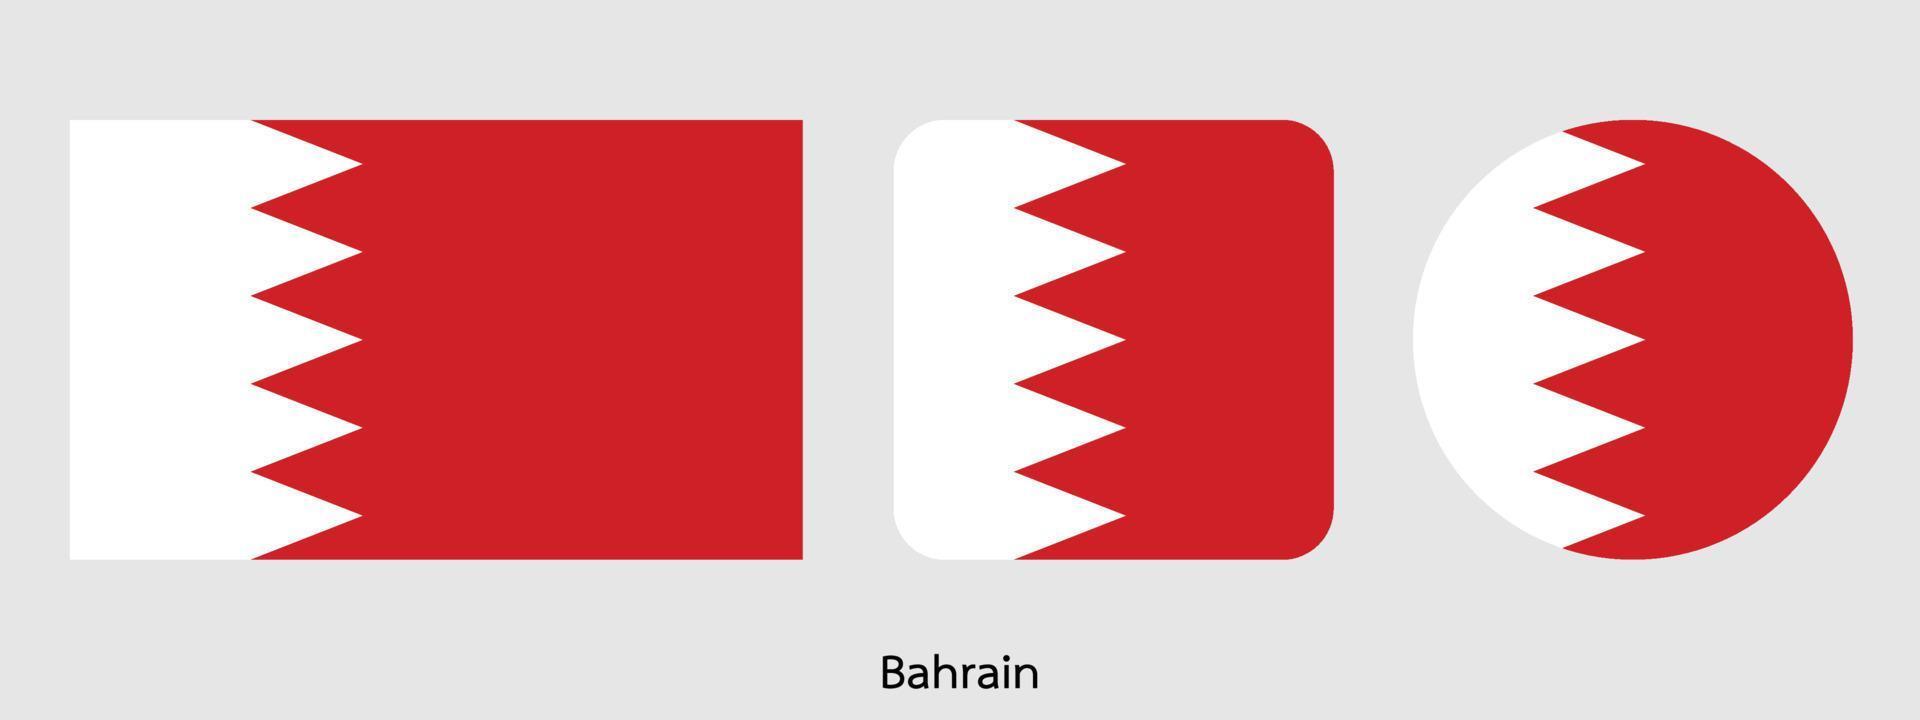 Bahrain-Flagge, Vektorillustration vektor